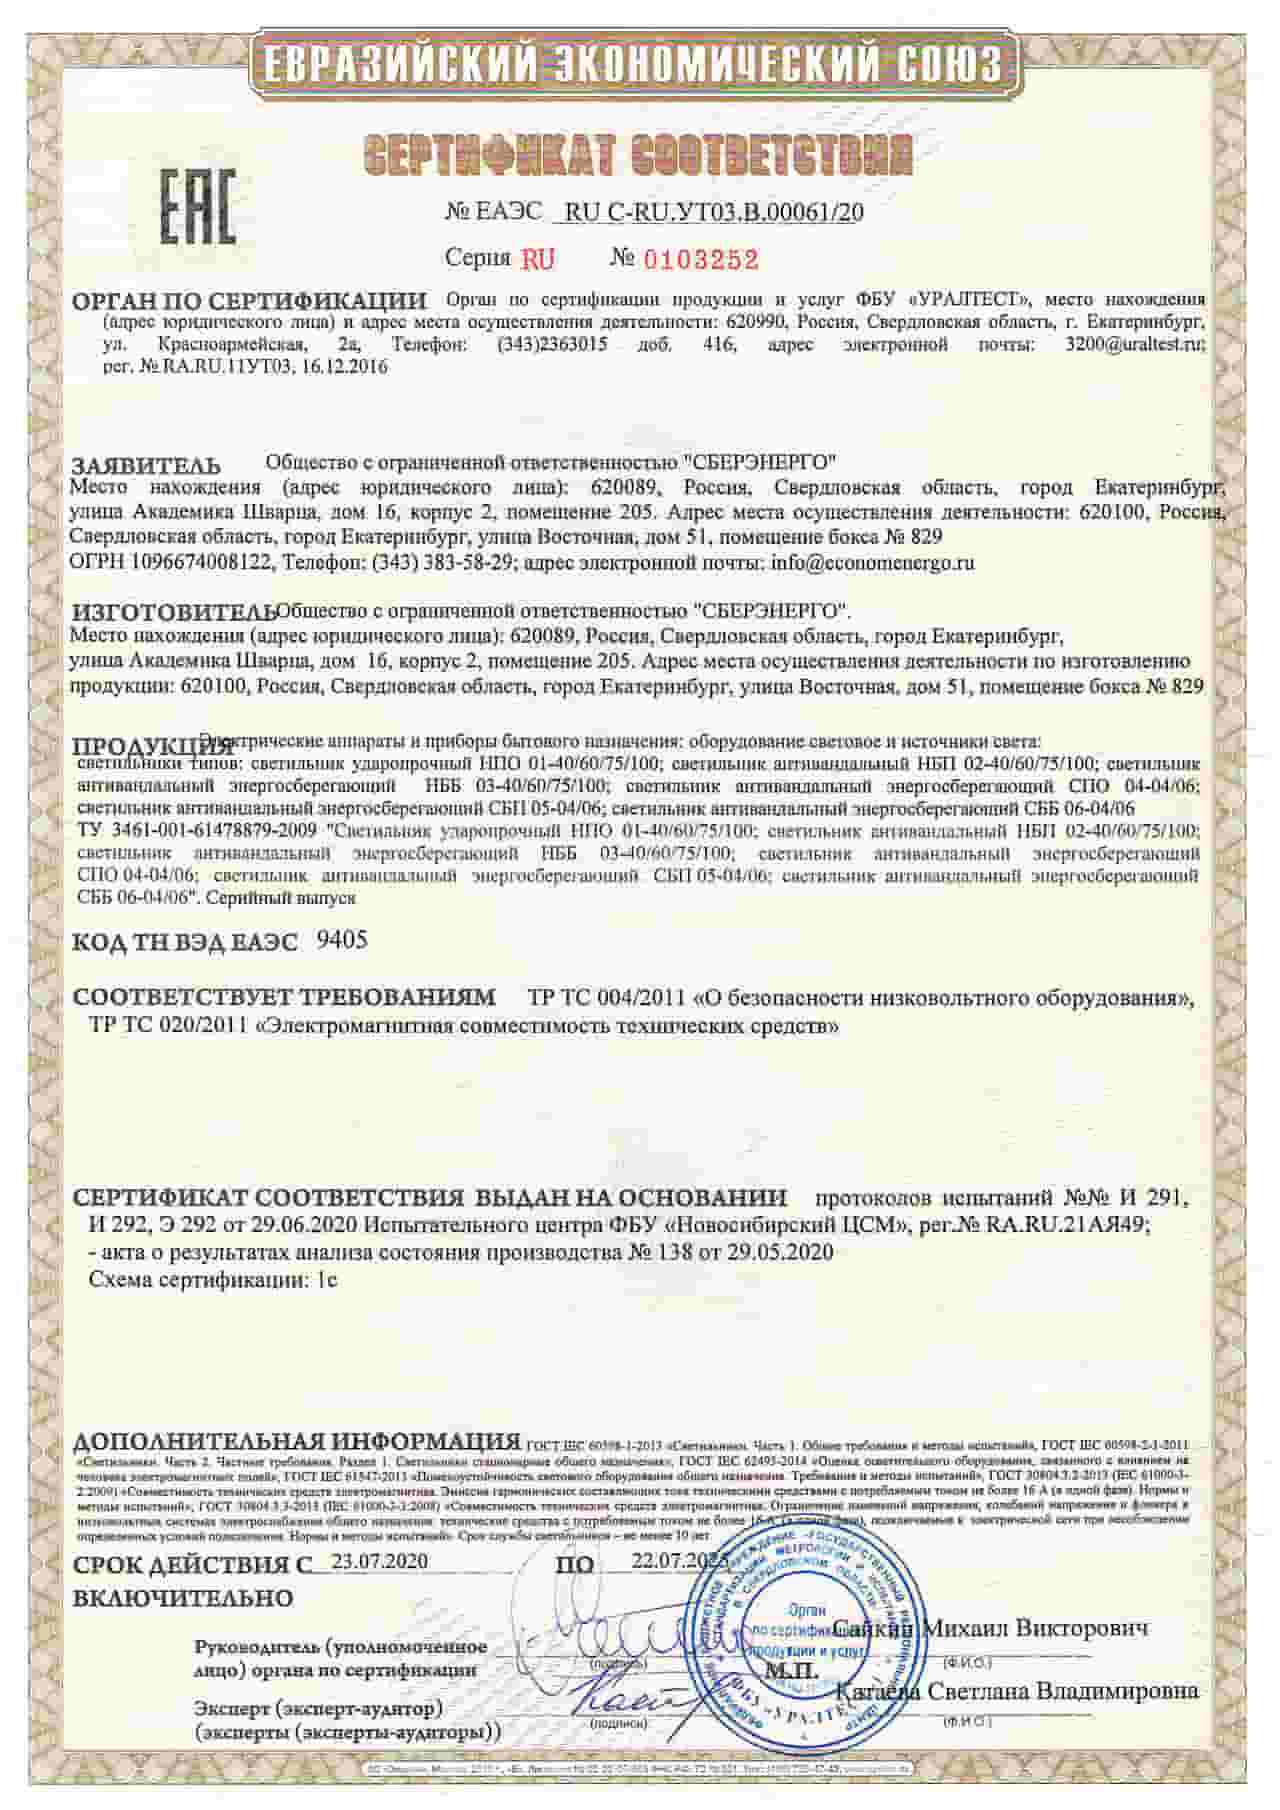 Сертификат качества светильников СБЕРЭНЕРГО